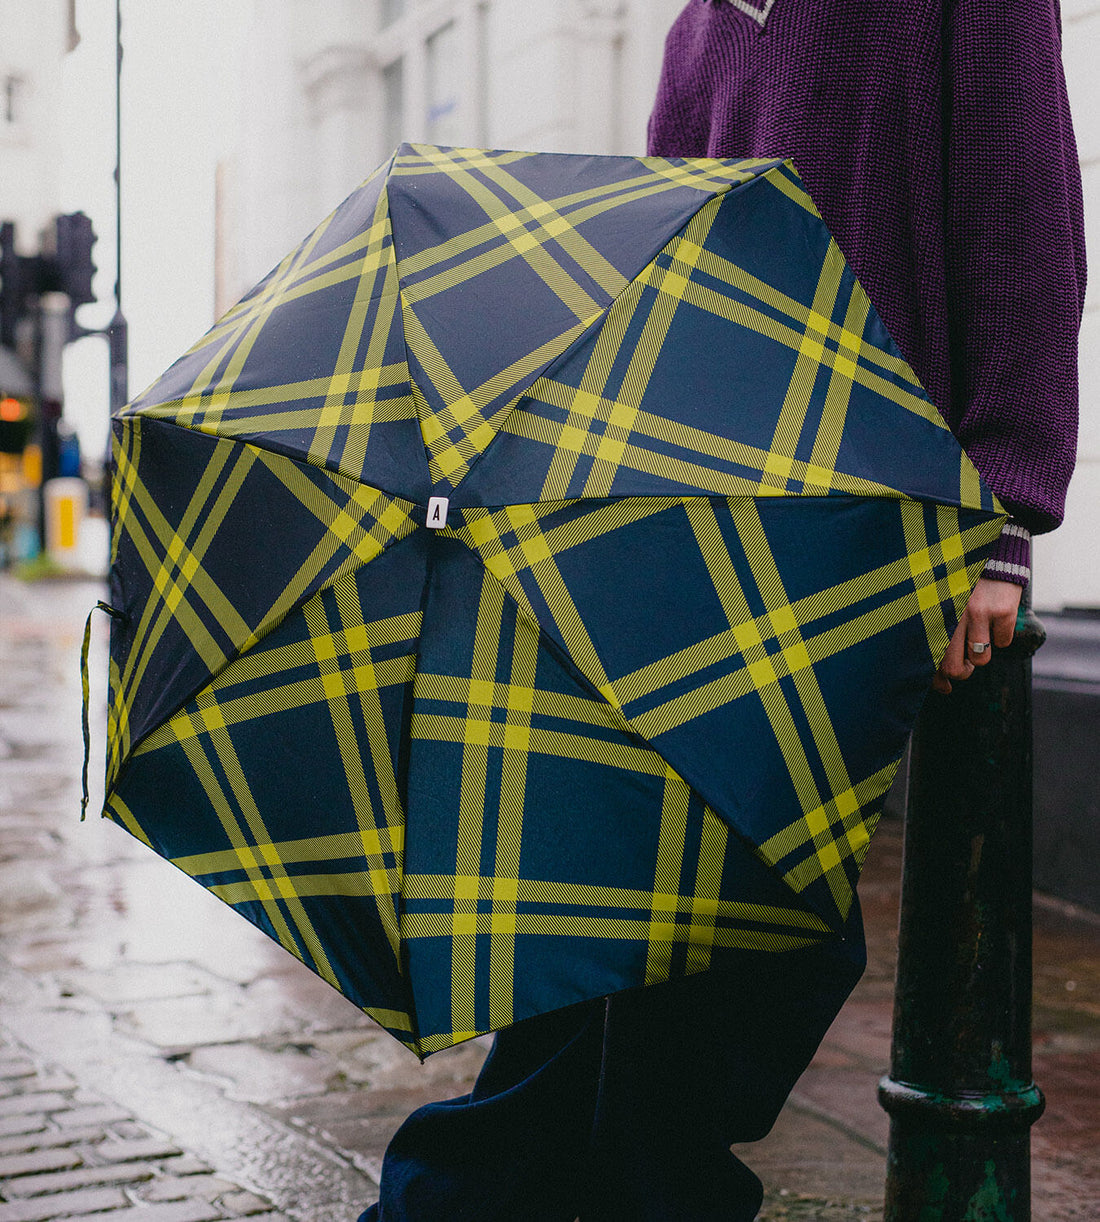 Mini parapluie anatole alwyne tweed noir anis solide léger et ultra compact 